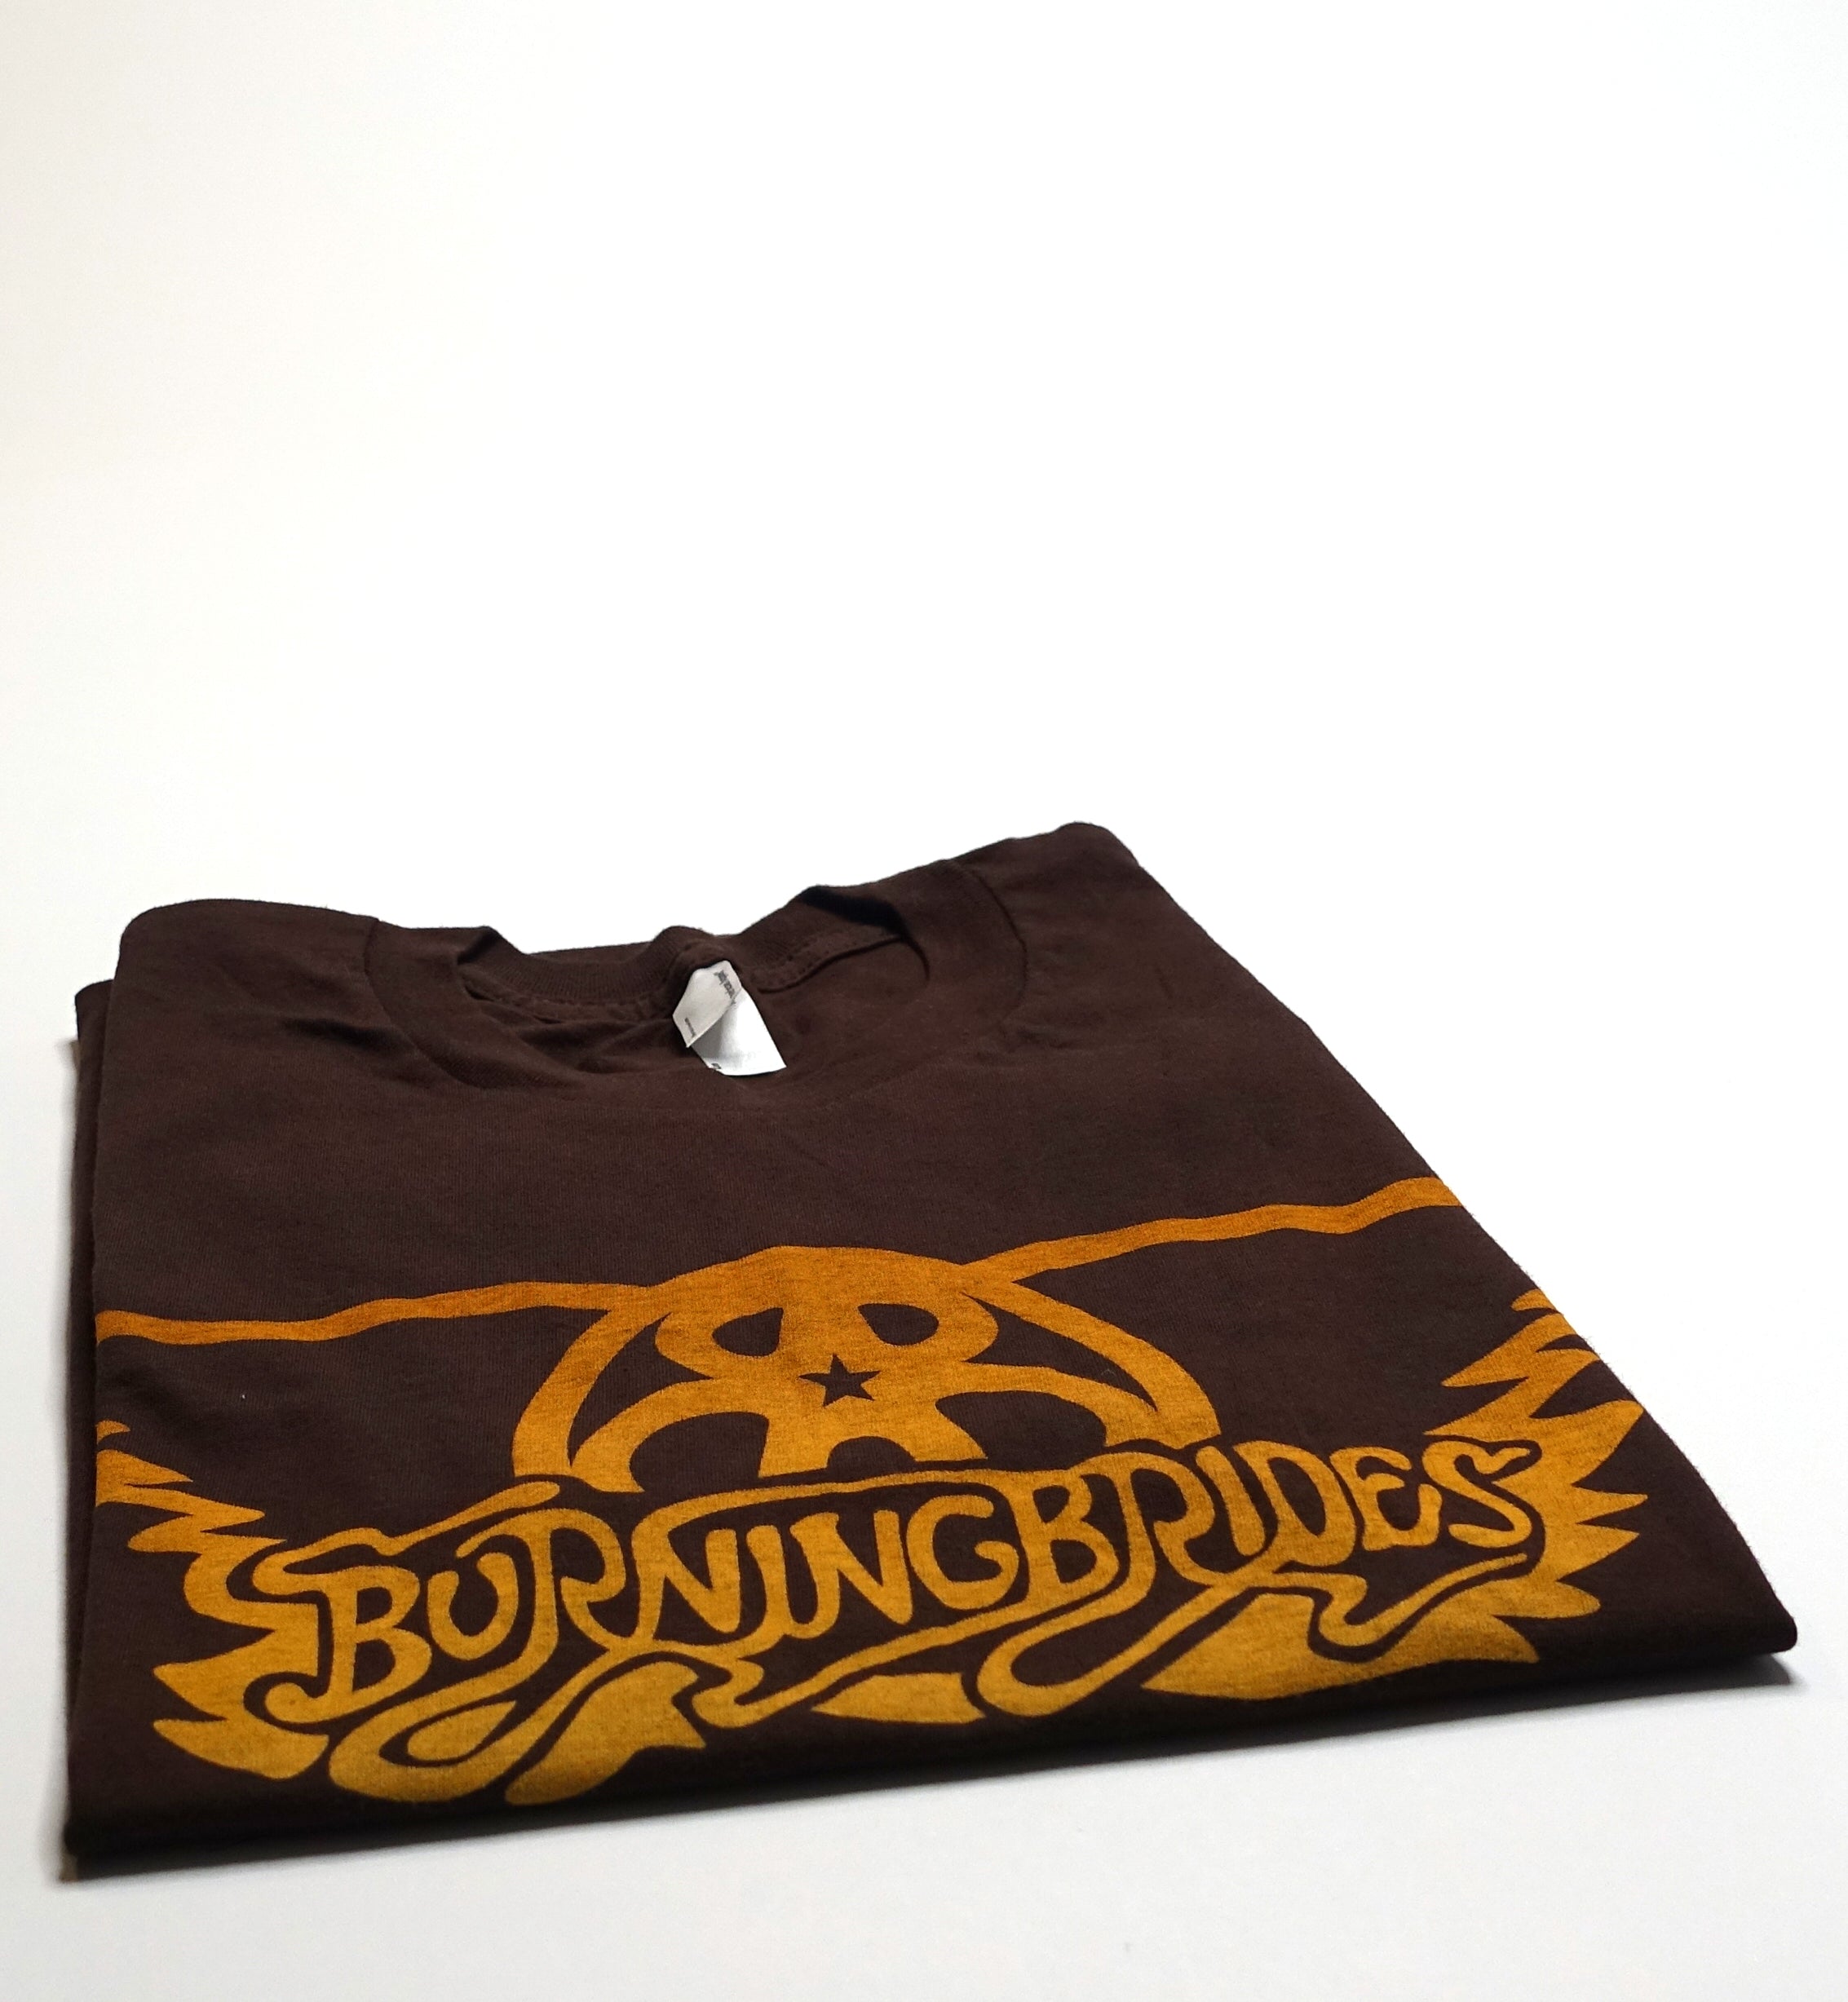 Burning Brides ‎– Aerosmith Knockoff Tour Shirt Size Small